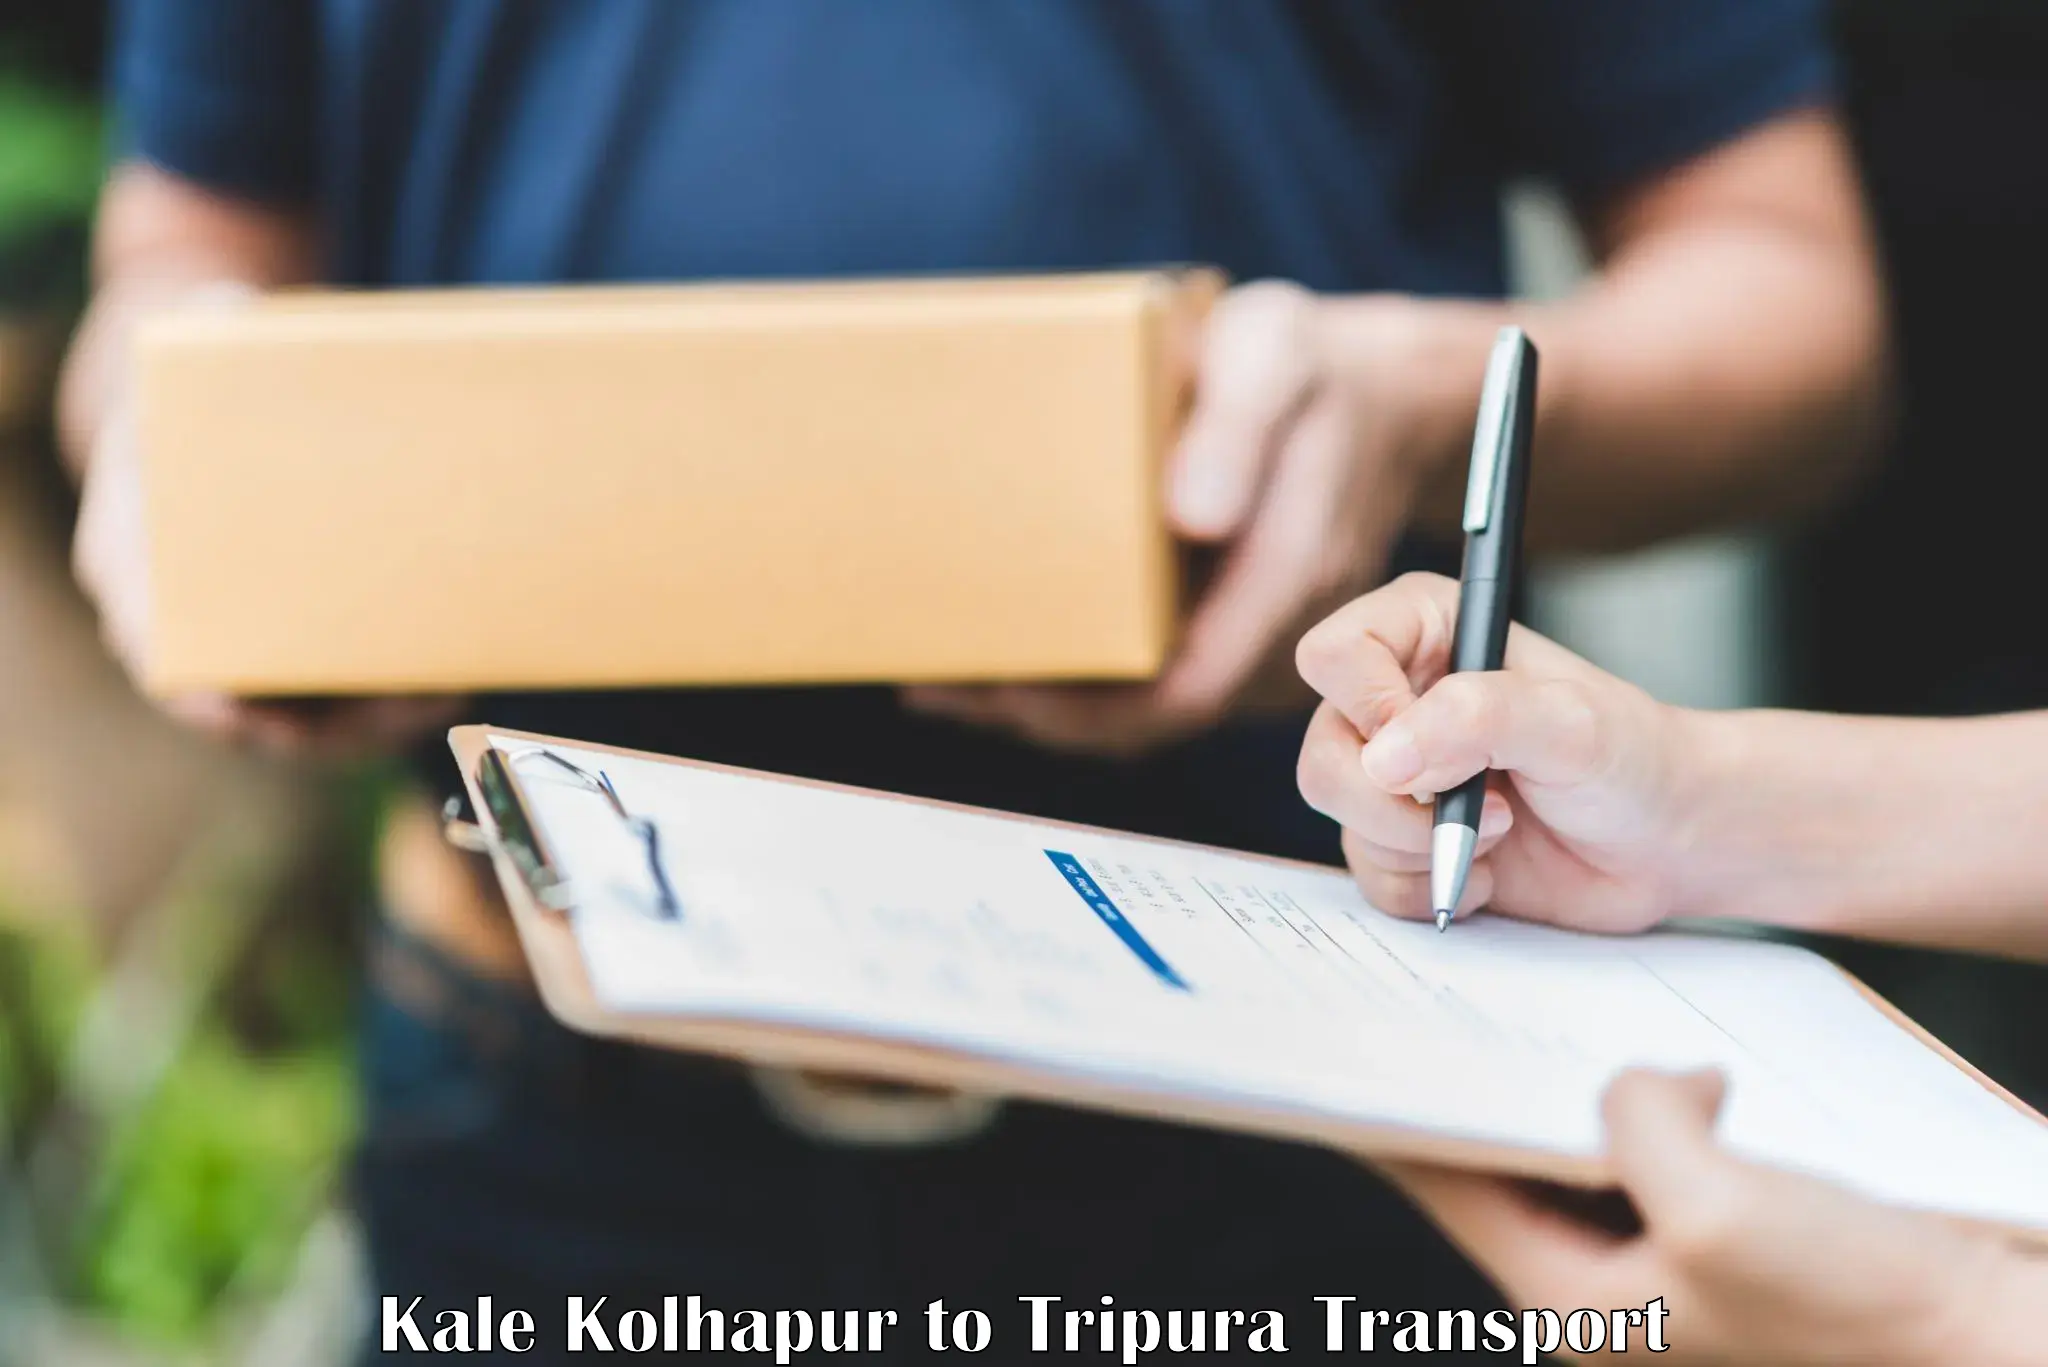 Online transport booking Kale Kolhapur to Udaipur Tripura